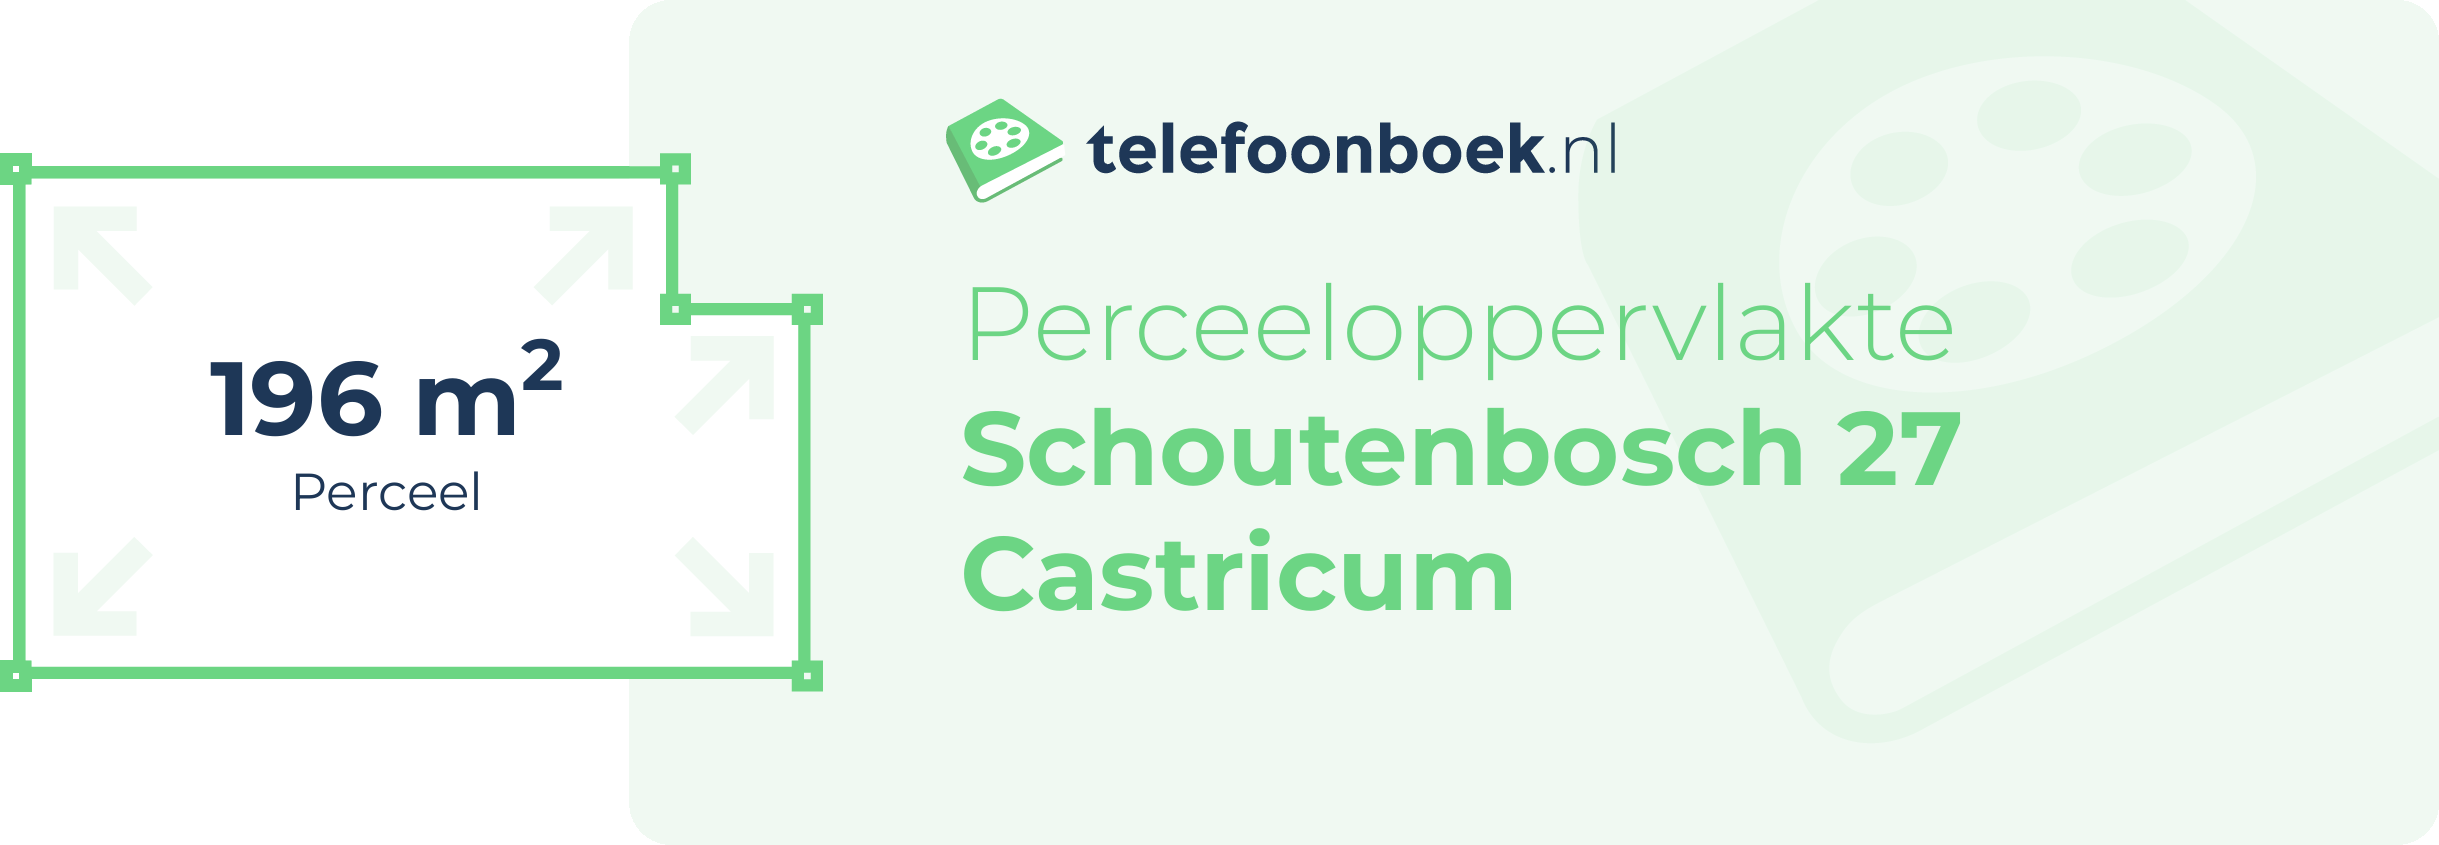 Perceeloppervlakte Schoutenbosch 27 Castricum